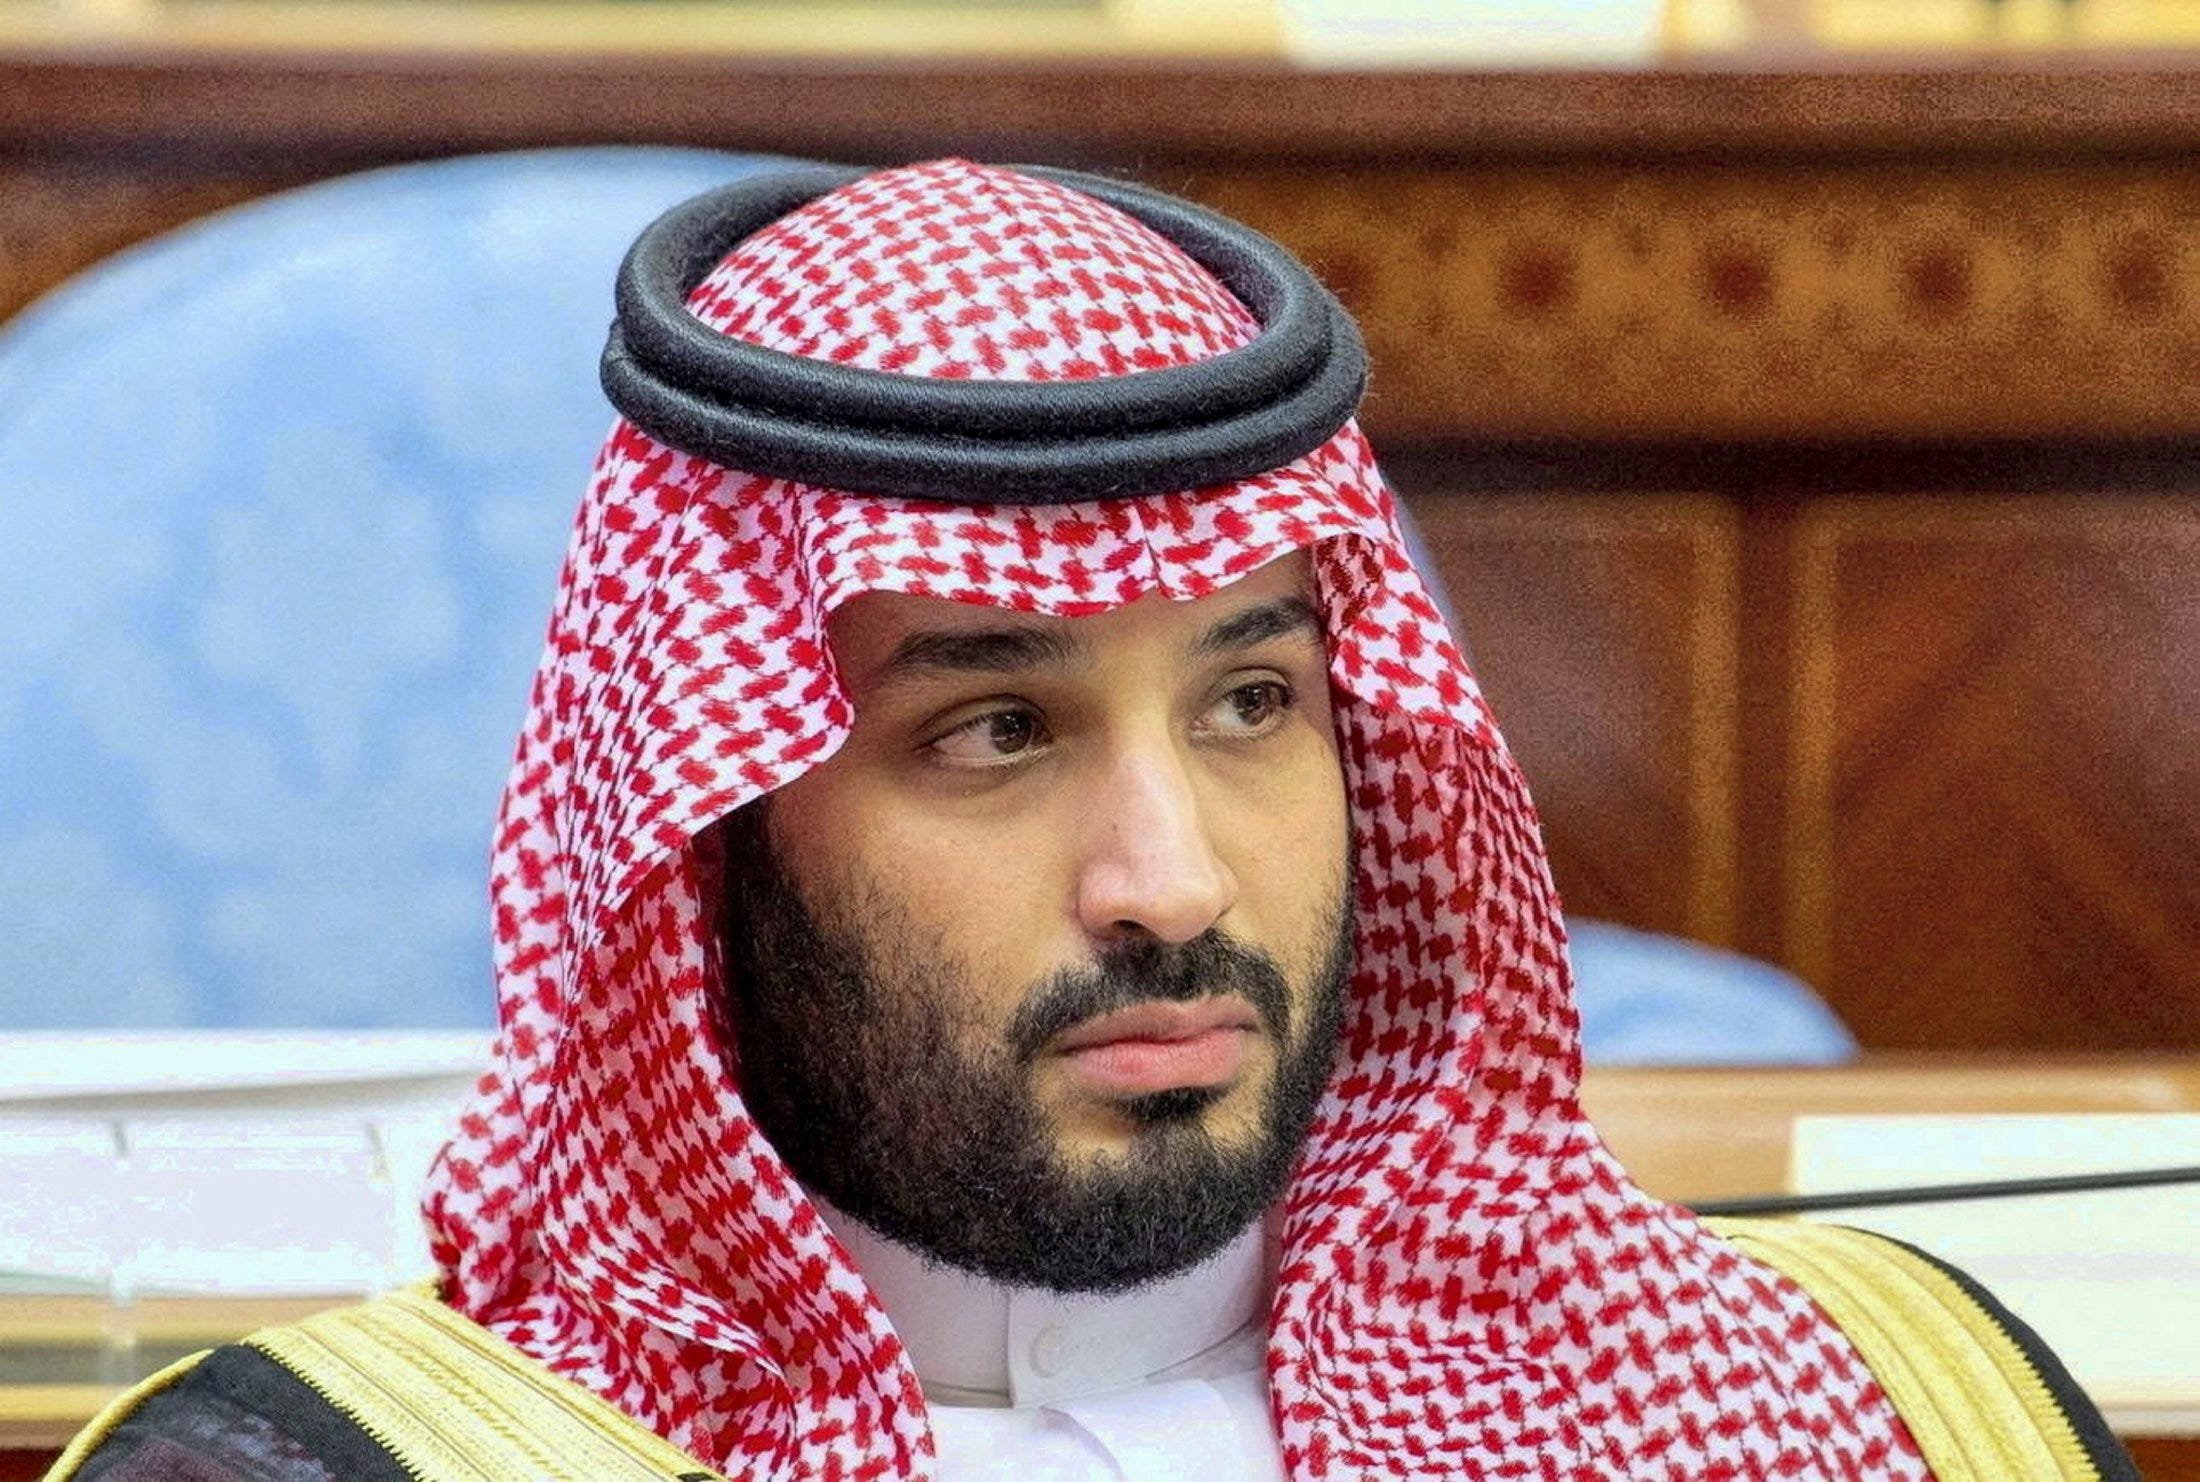 Вариант саудовской аравии. Мохаммед Бин Салман. Принц Салман Саудовская Аравия. Принц Саудовской Аравии Мухаммед Бен Сальман Аль Сауд. Наследный принц Саудовской Аравии Мухаммед.